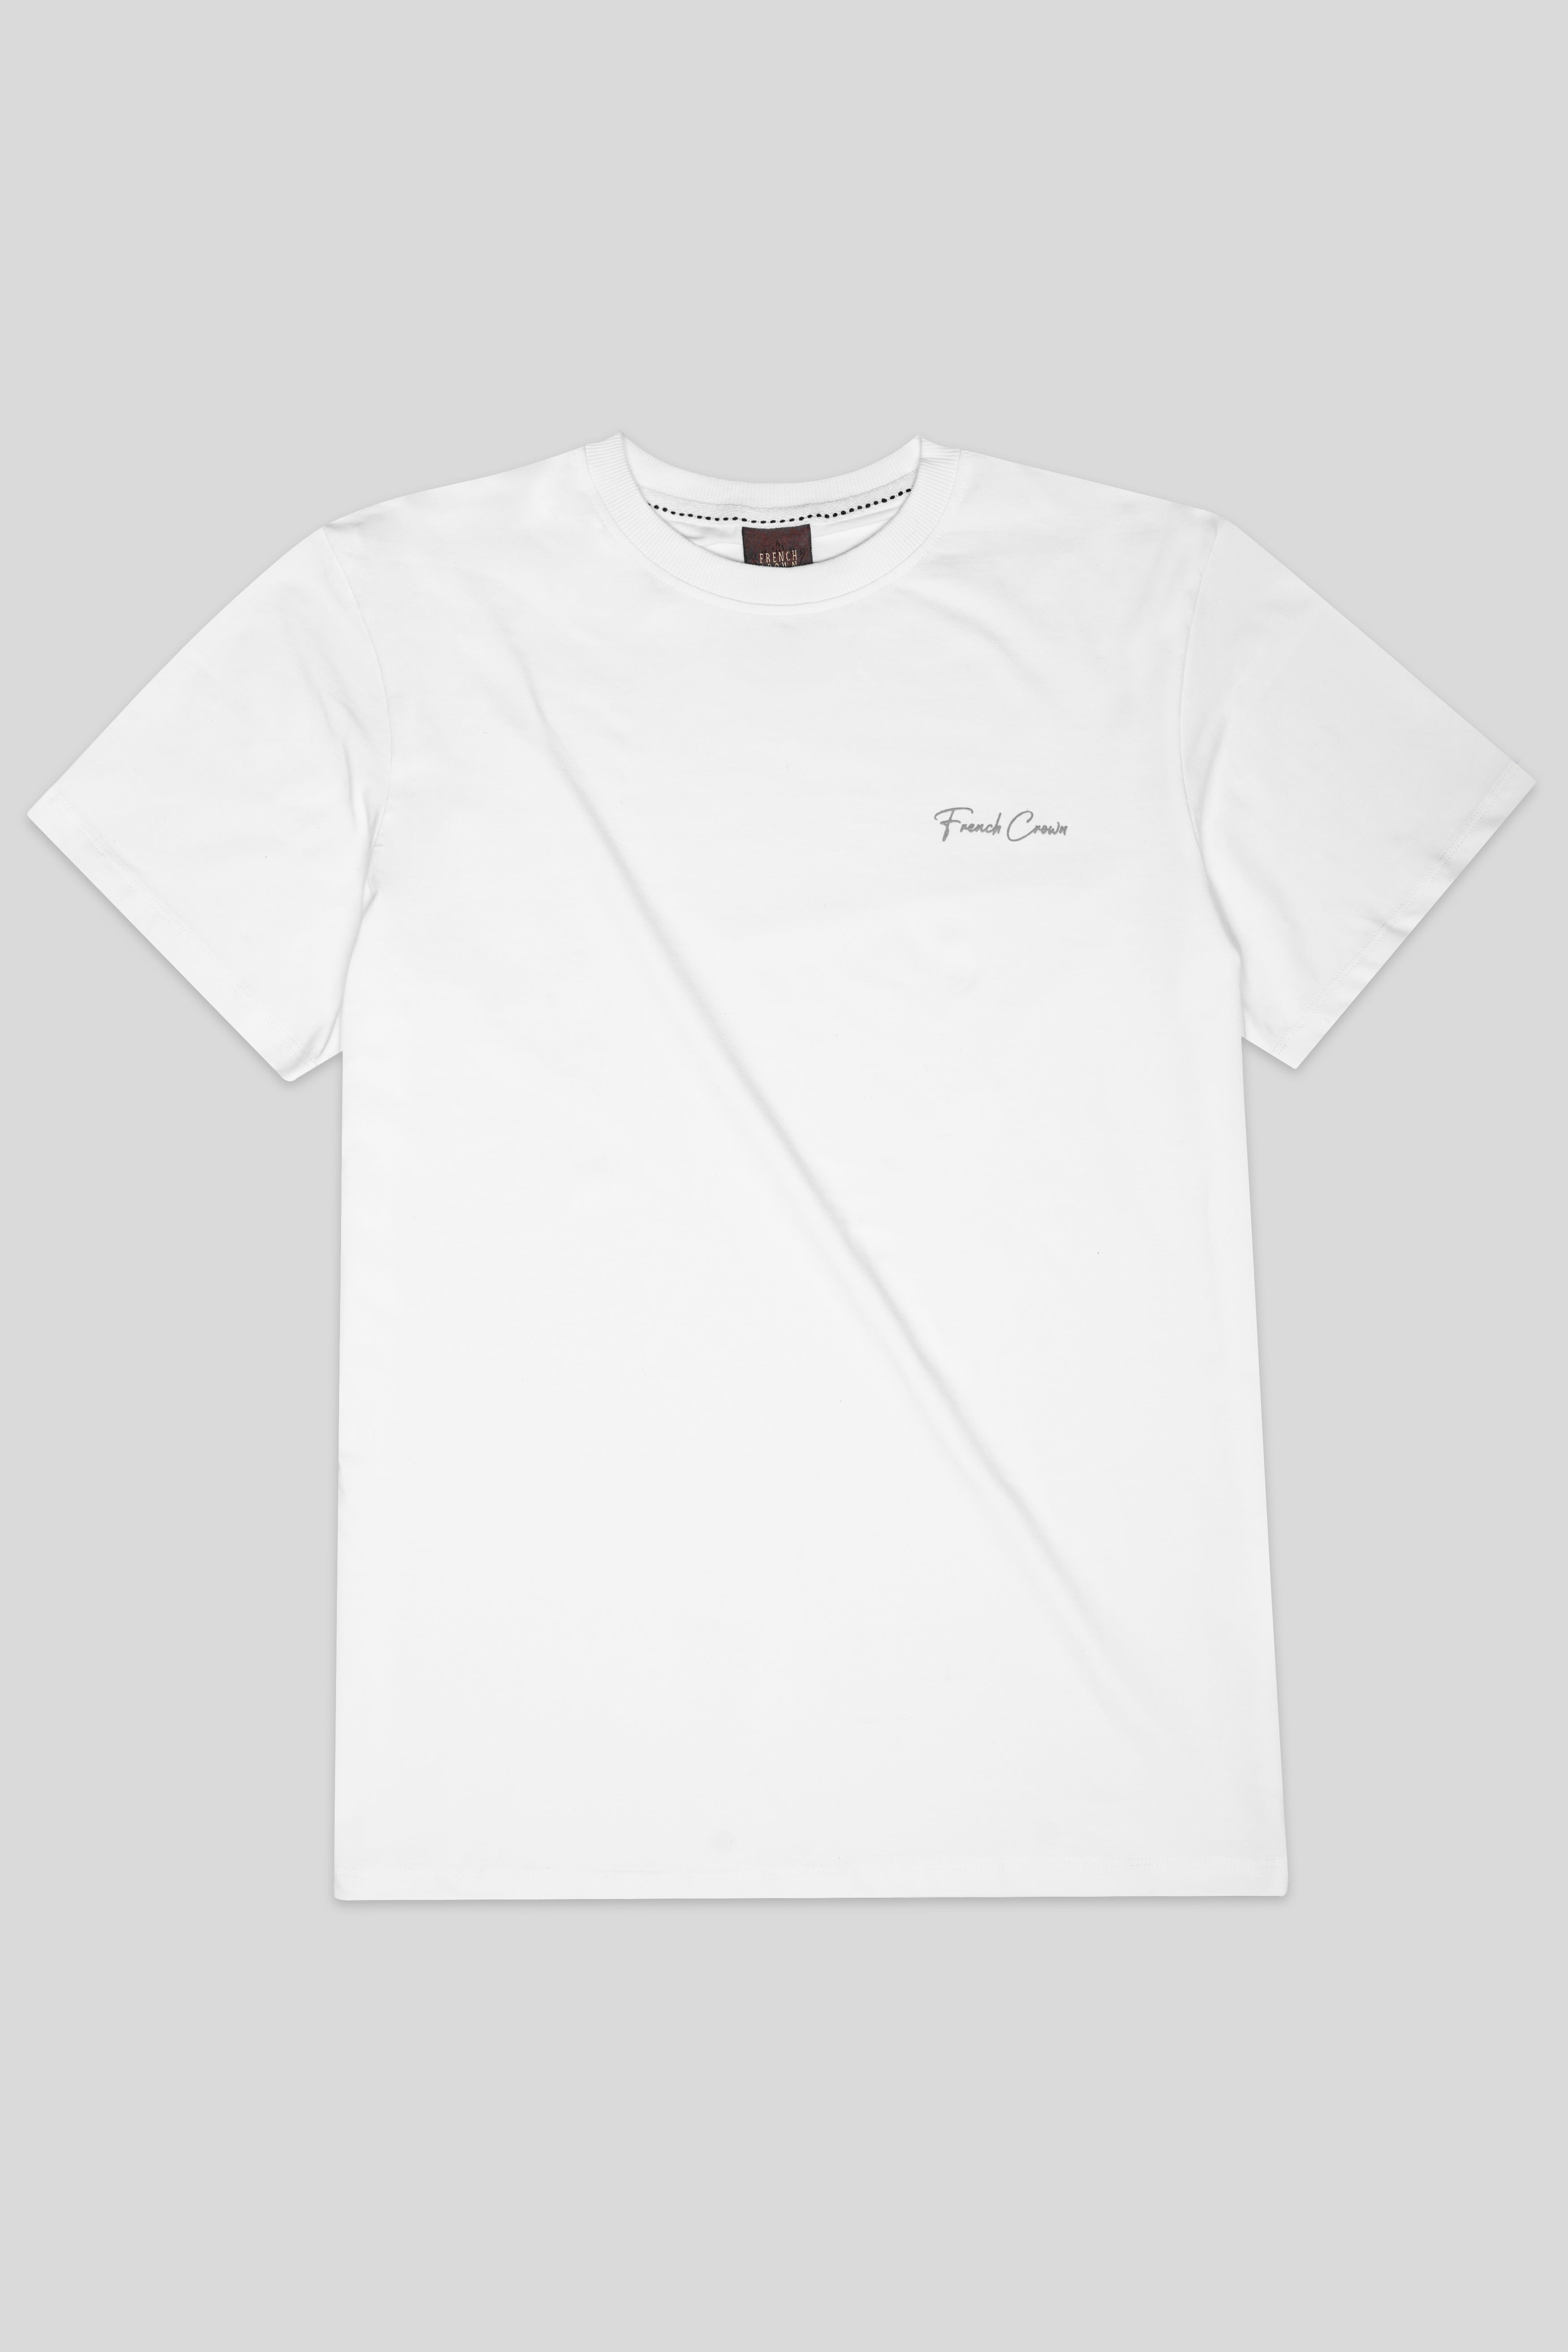 Bright White Premium Cotton T-Shirt